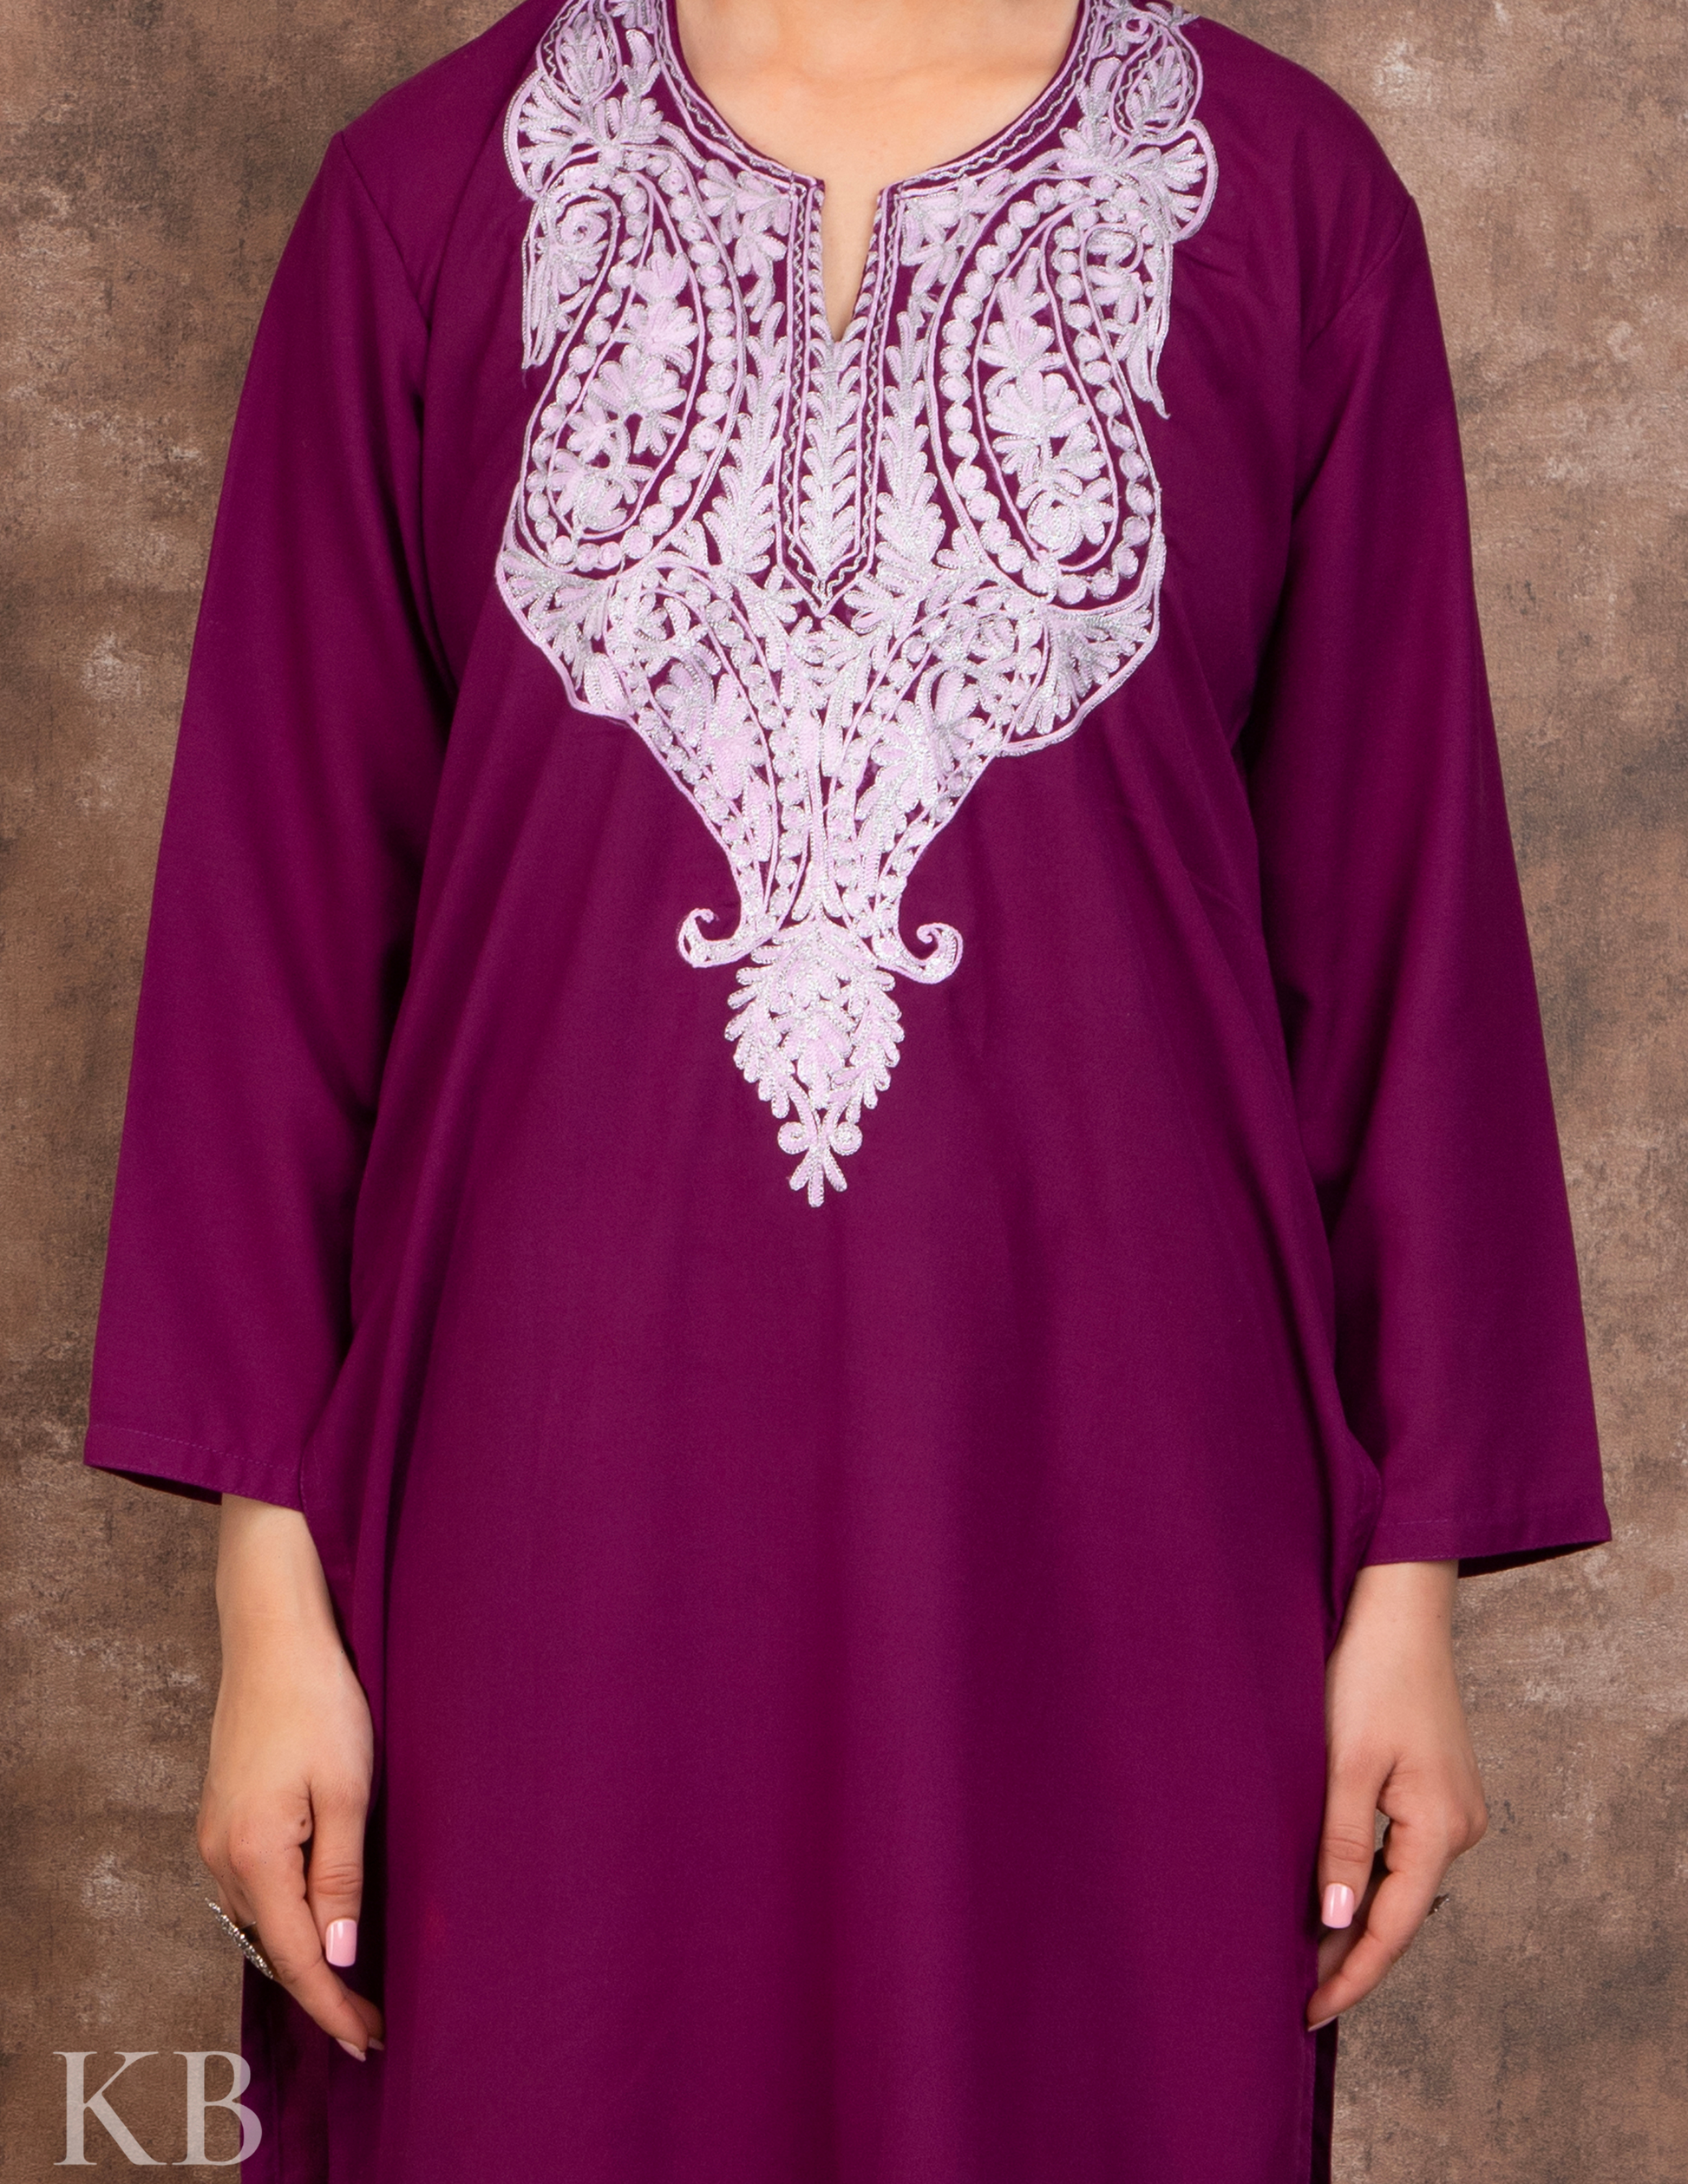 Zari Lined Purple Aari Embroidered Suit - Kashmir Box